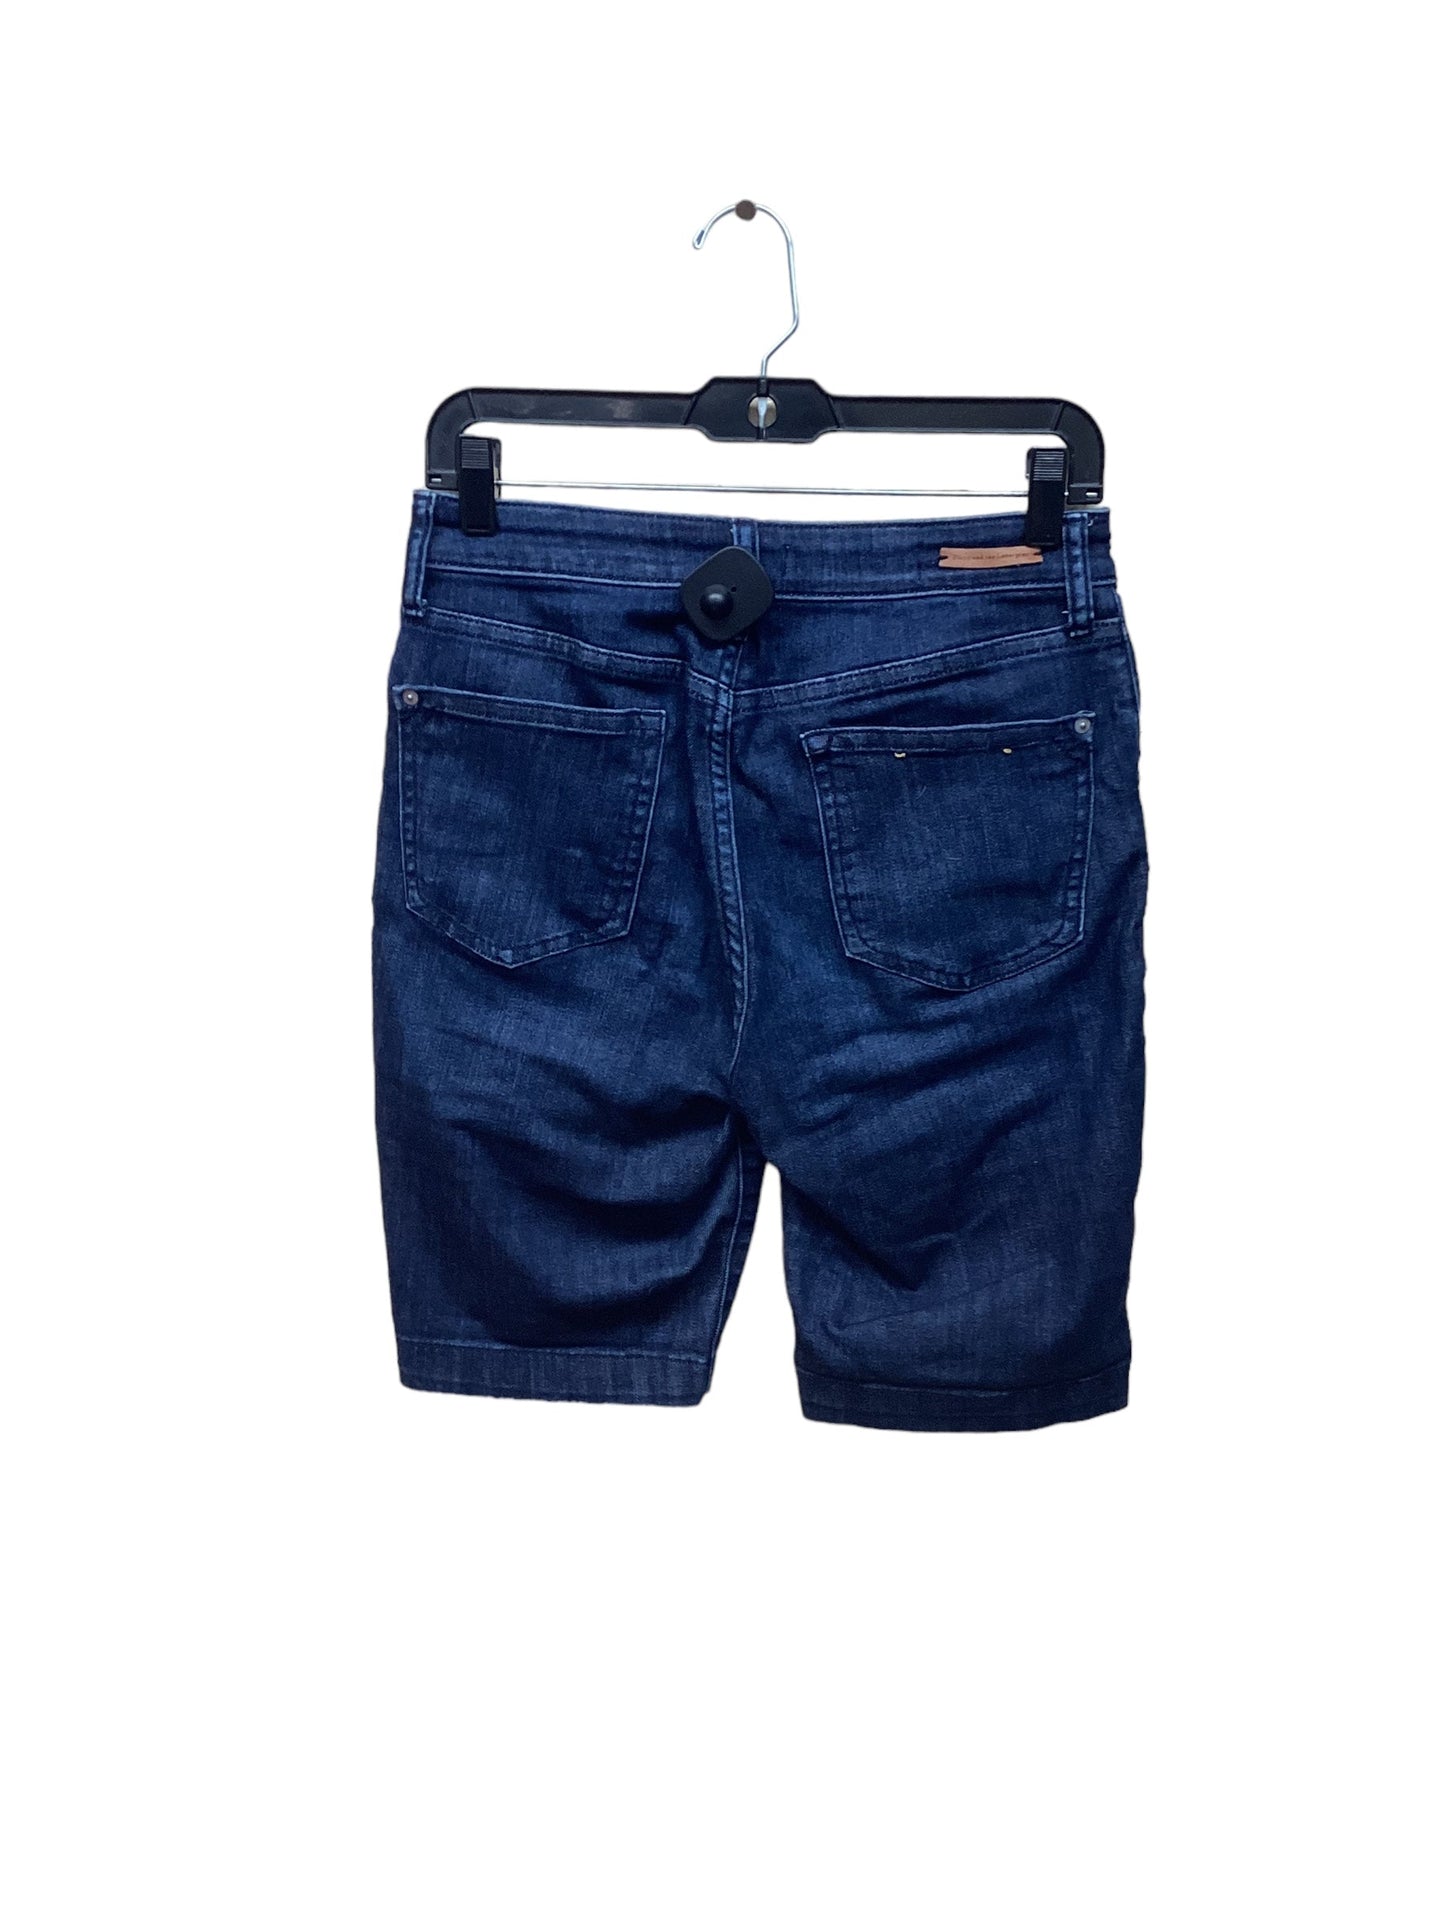 Blue Denim Shorts Pilcro, Size 4